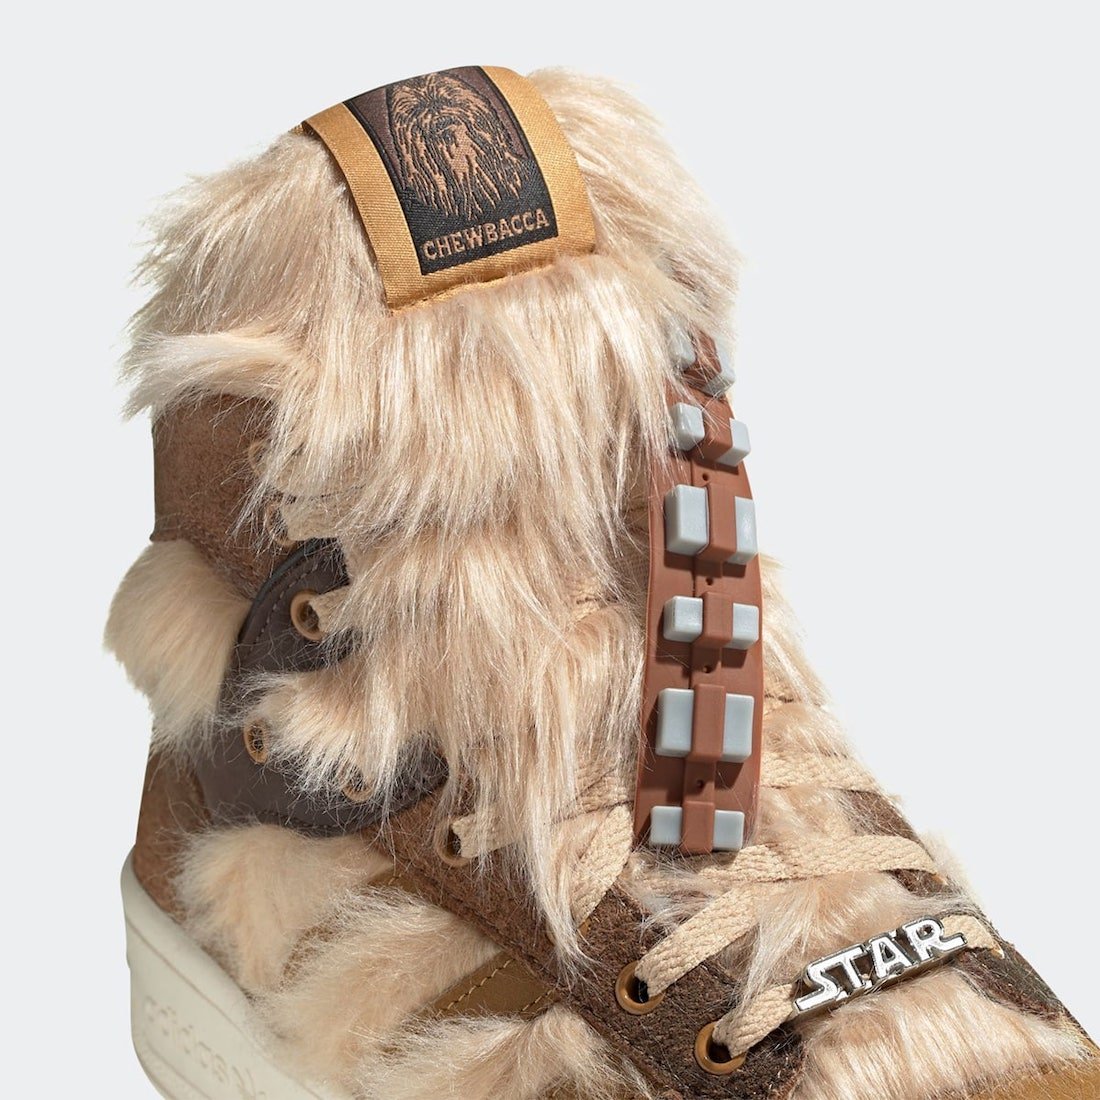 Star Wars adidas Rivalry Hi Chewbacca FX9290 Release Date Info